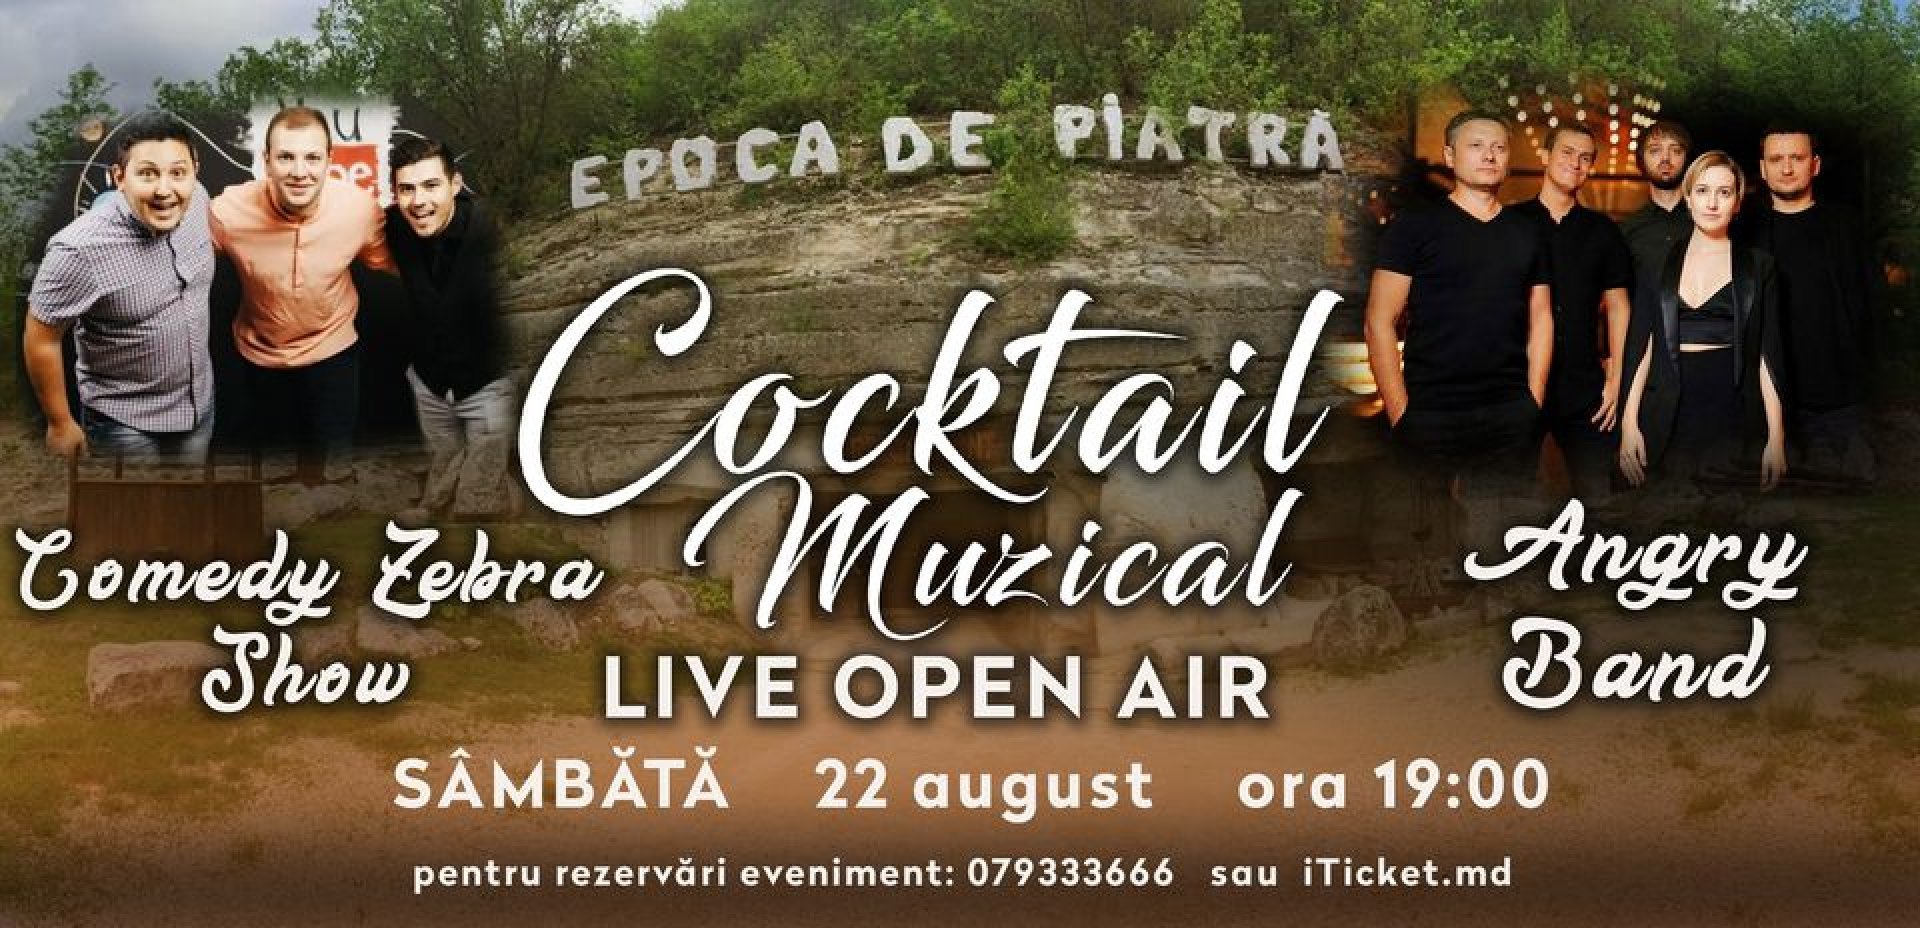 Cocktail Muzical la Epoca de Piatra. Editia 4